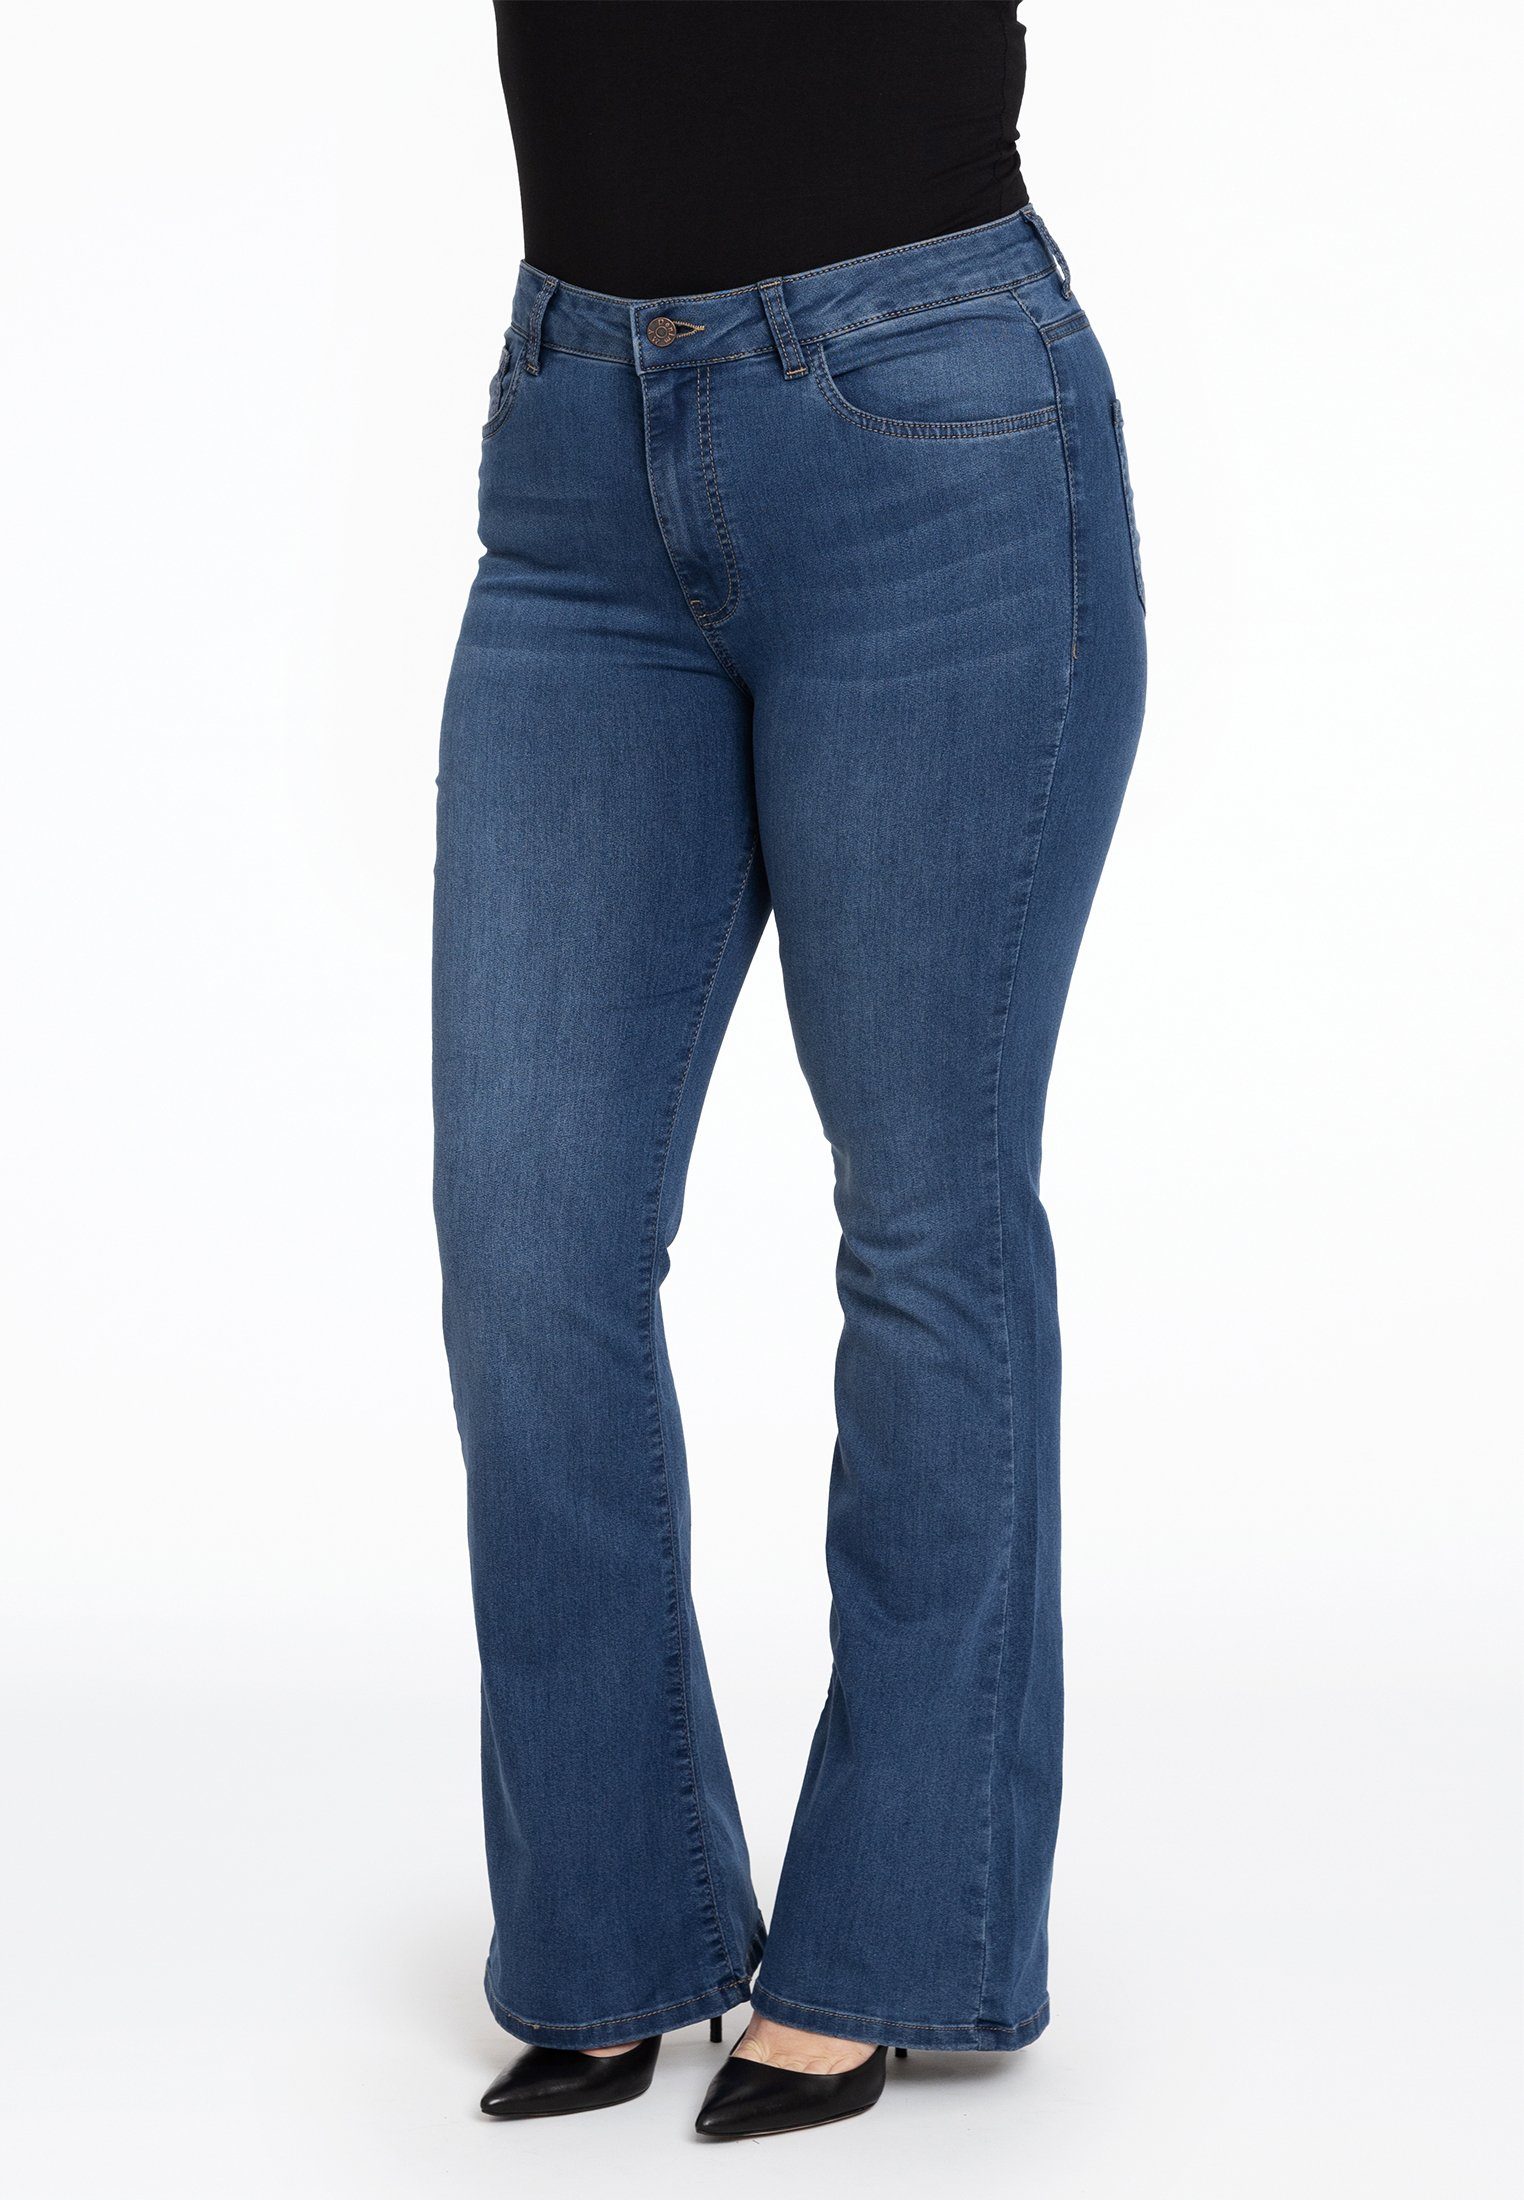 Yoek High-waist-Jeans Große Größen indigo